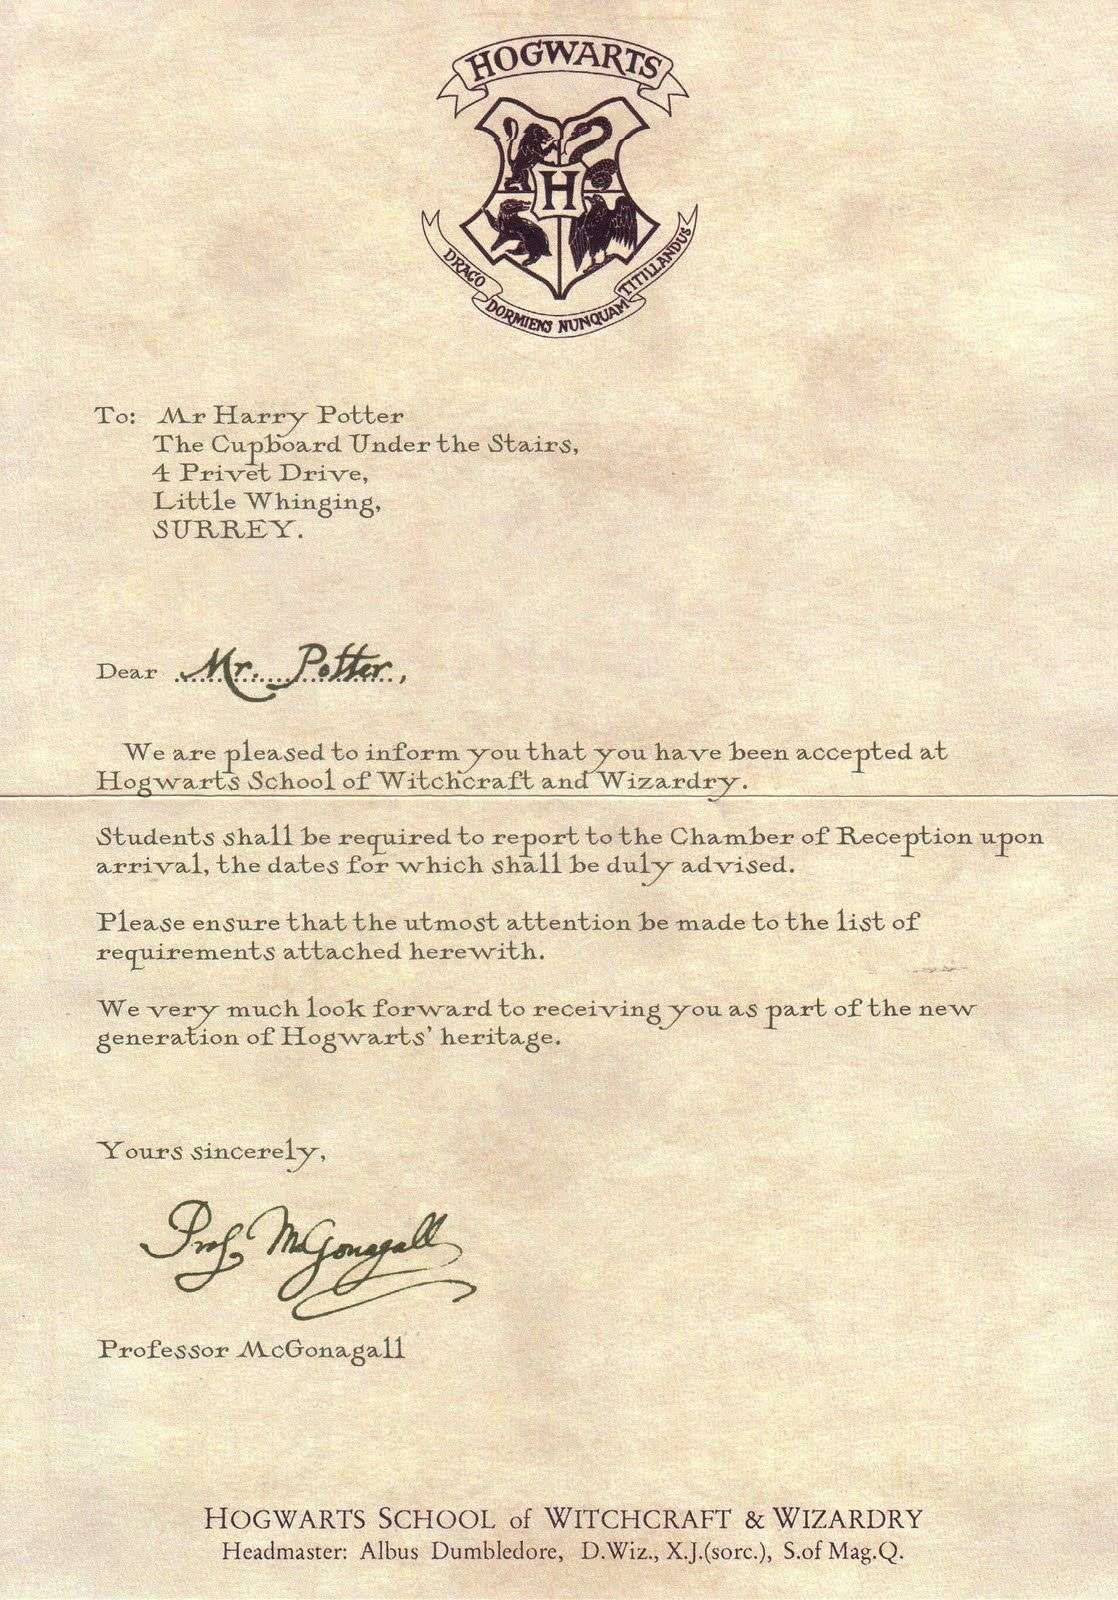 Letter from hogwarts